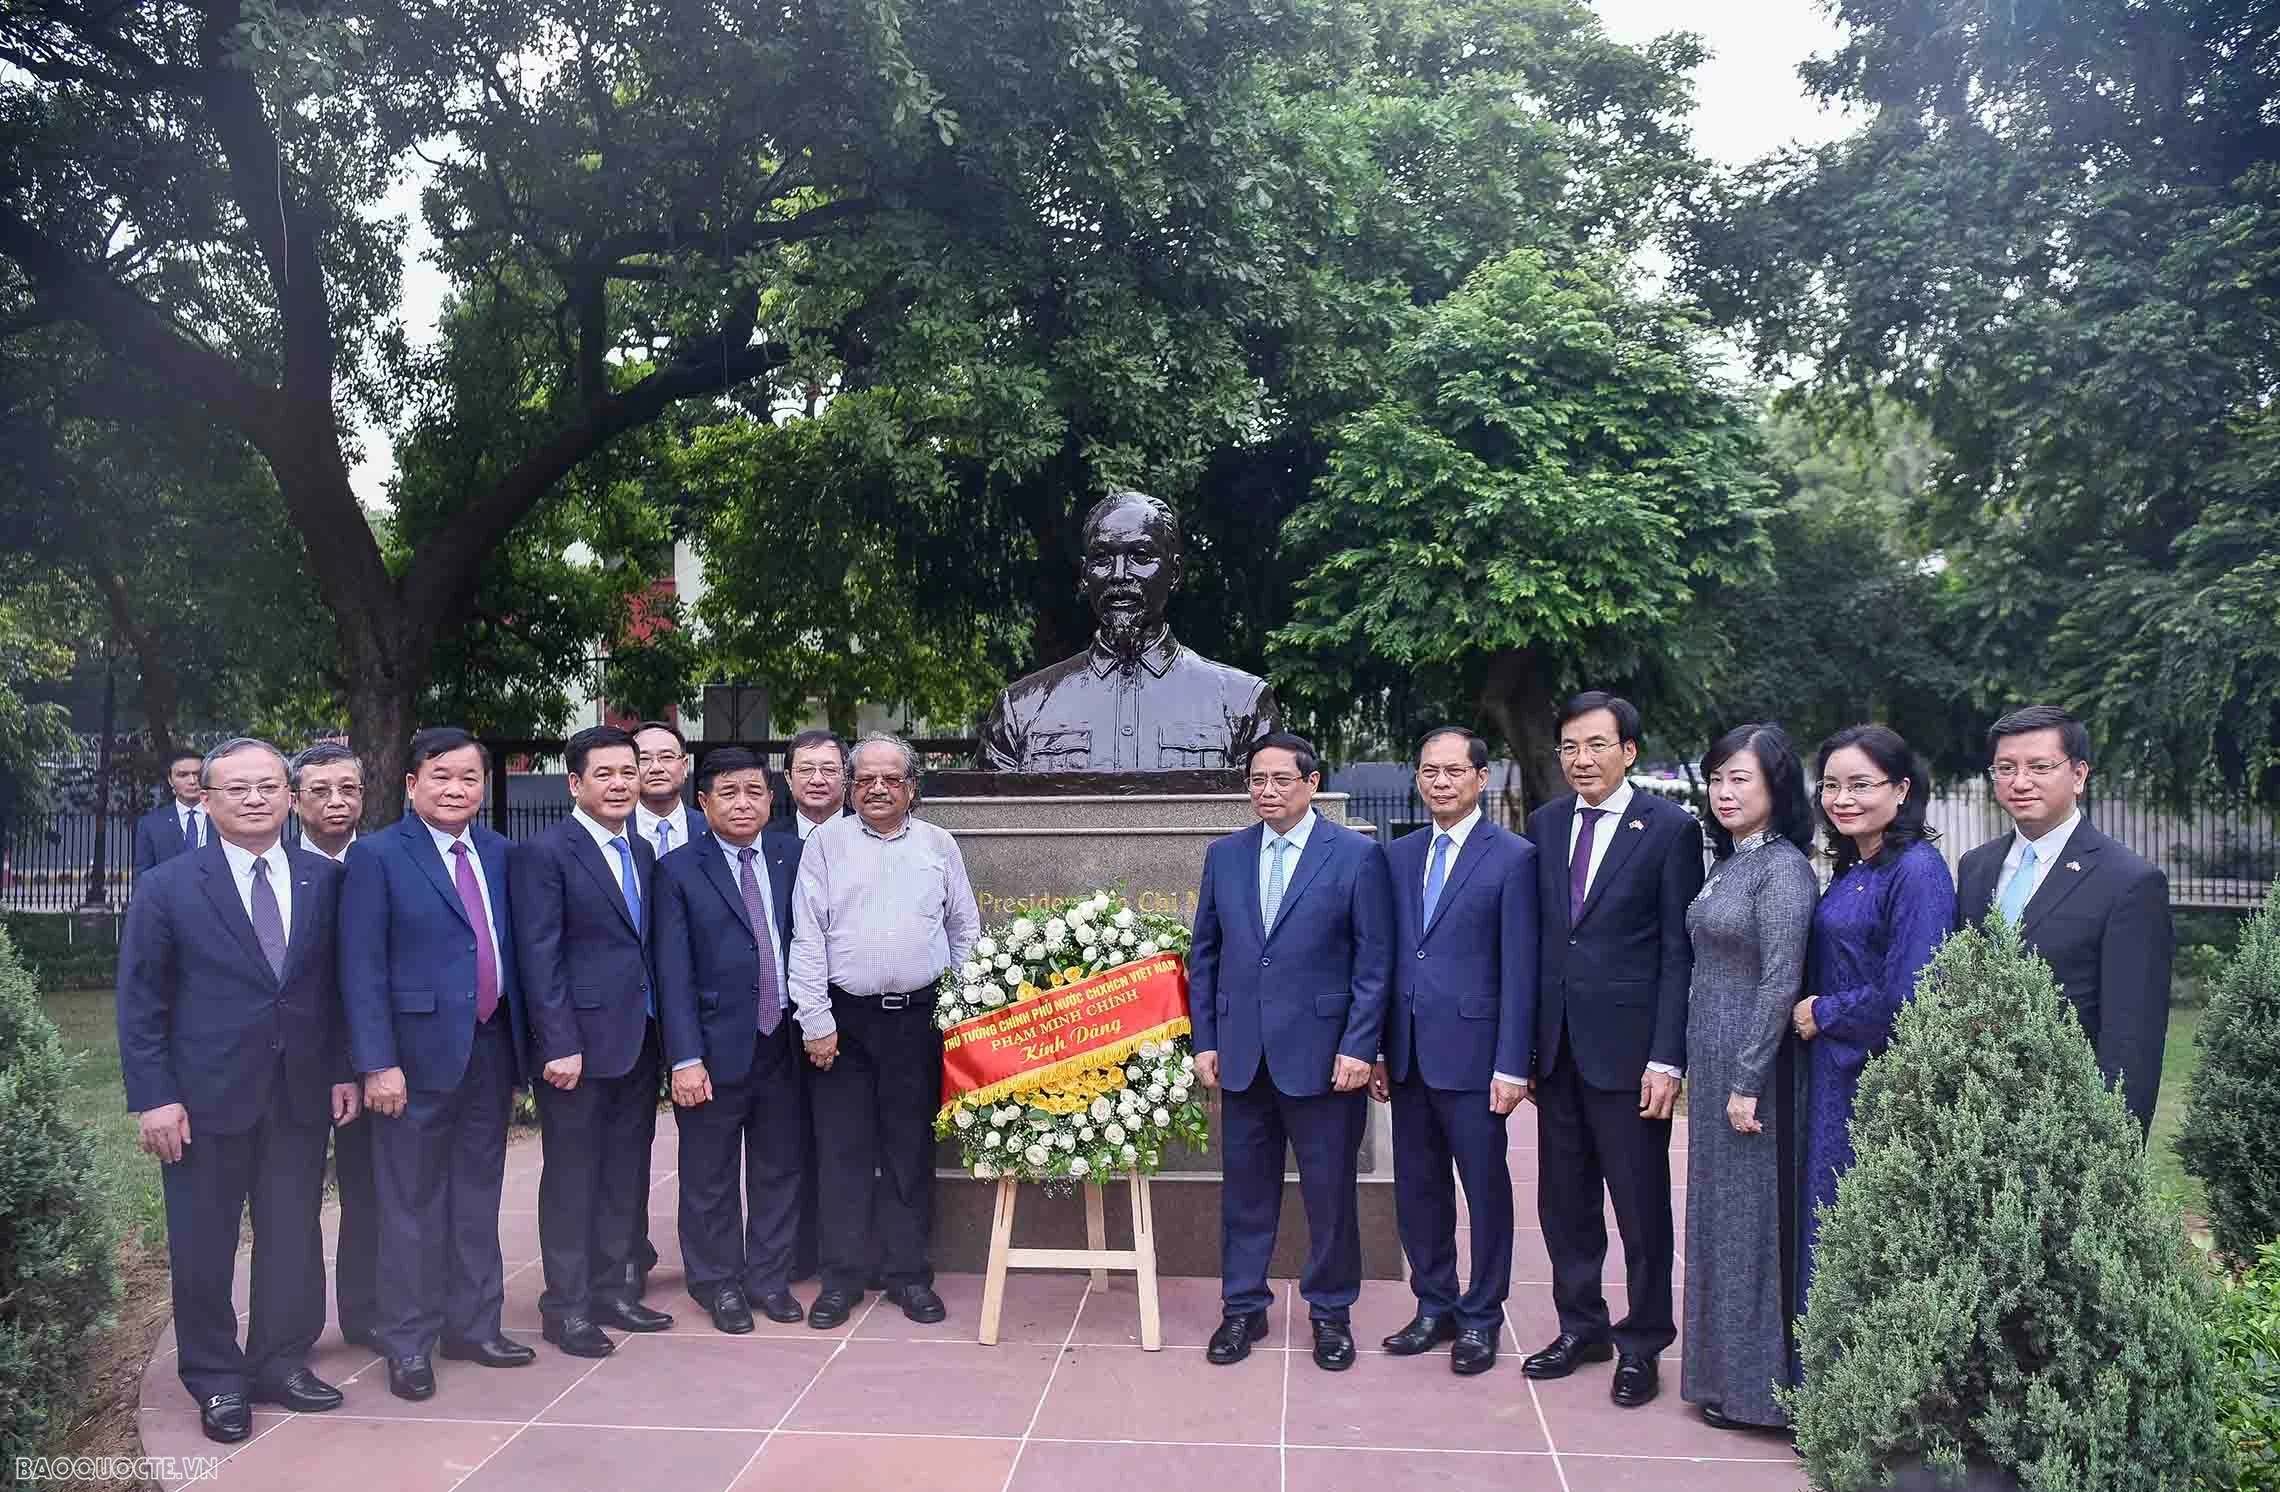 Tượng đồng Chủ tịch Hồ Chí Minh được đặt tại Công viên G20 rộng hơn 4.700m2, nằm giữa khu Ngoại giao đoàn, tại điểm giao giữa đường Kautilya và đường Niti, được ví như “trái tim” của Thủ đô New Delhi. 